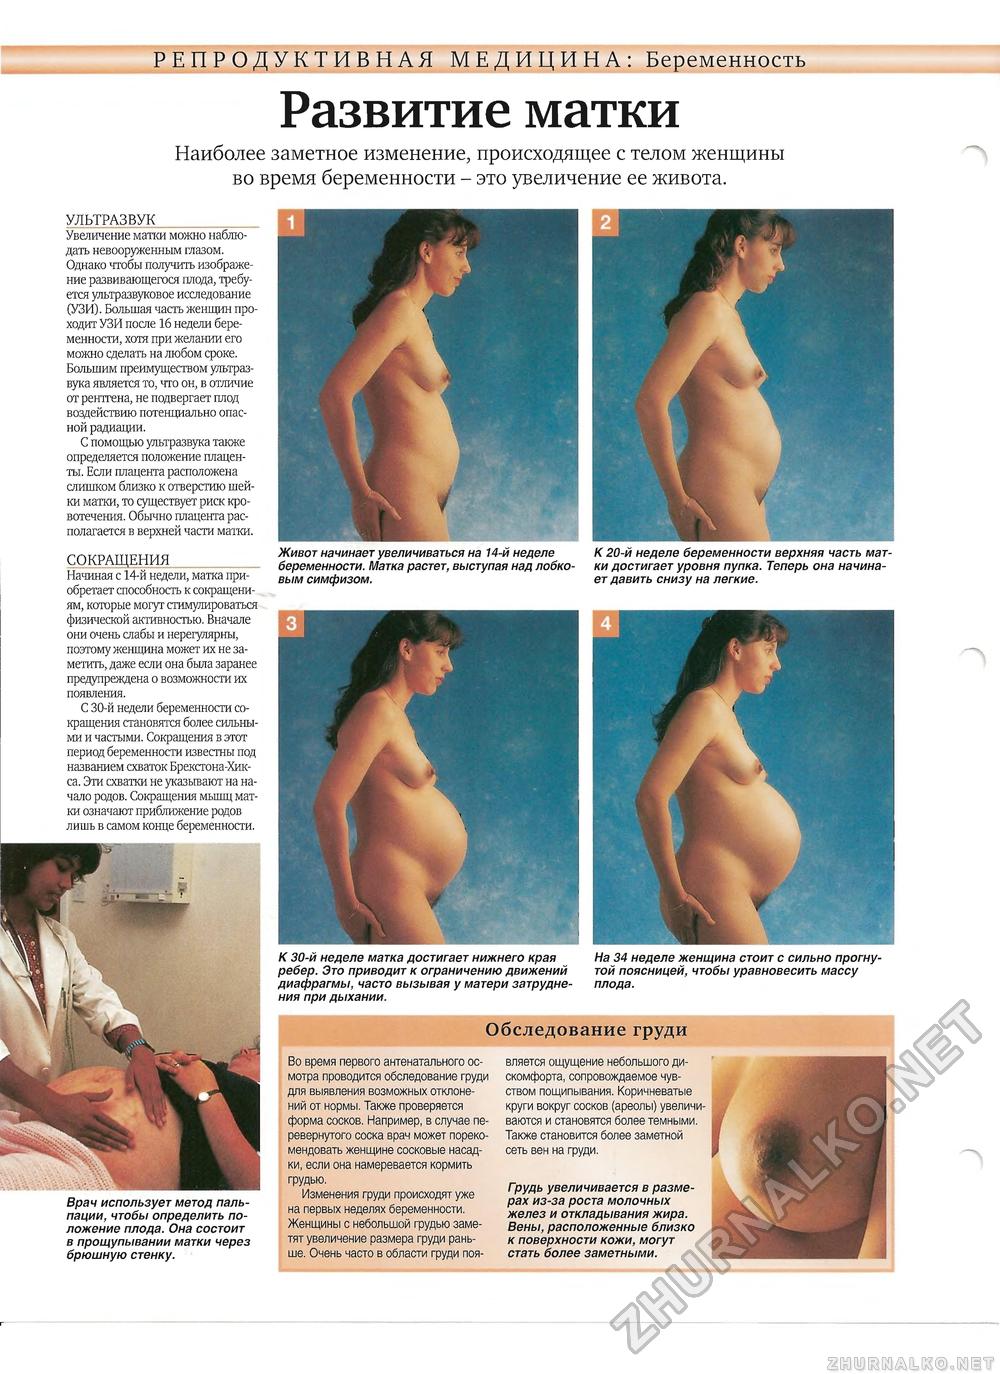 сроки болезненности груди при беременности фото 64